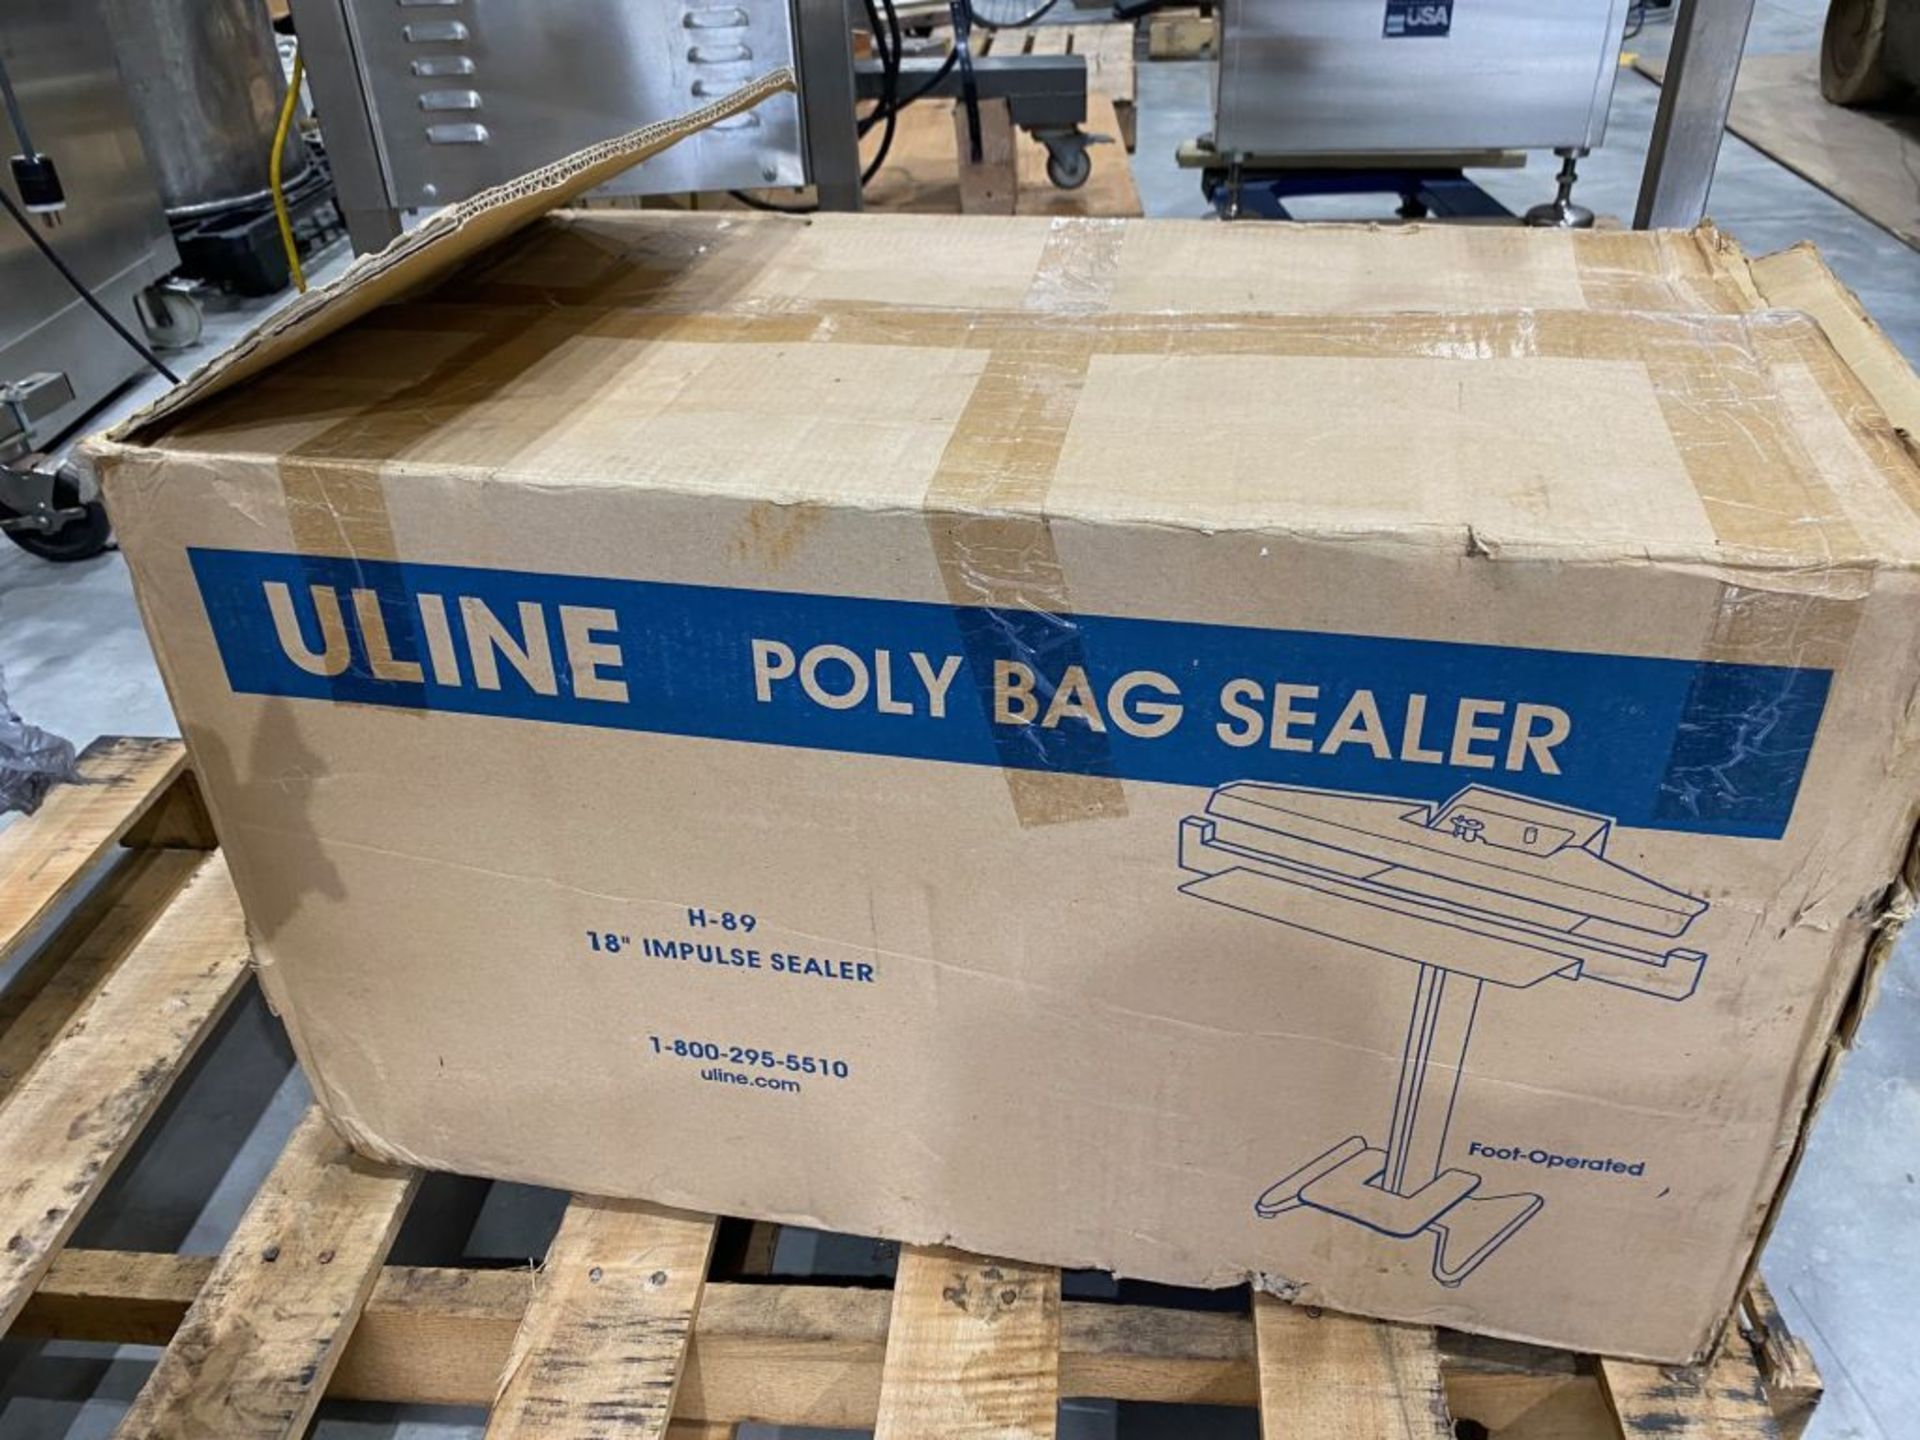 Uline Impulse Sealer, Model: H-89, 18" Sealer Head. Unit appears unused, as shown in photos.